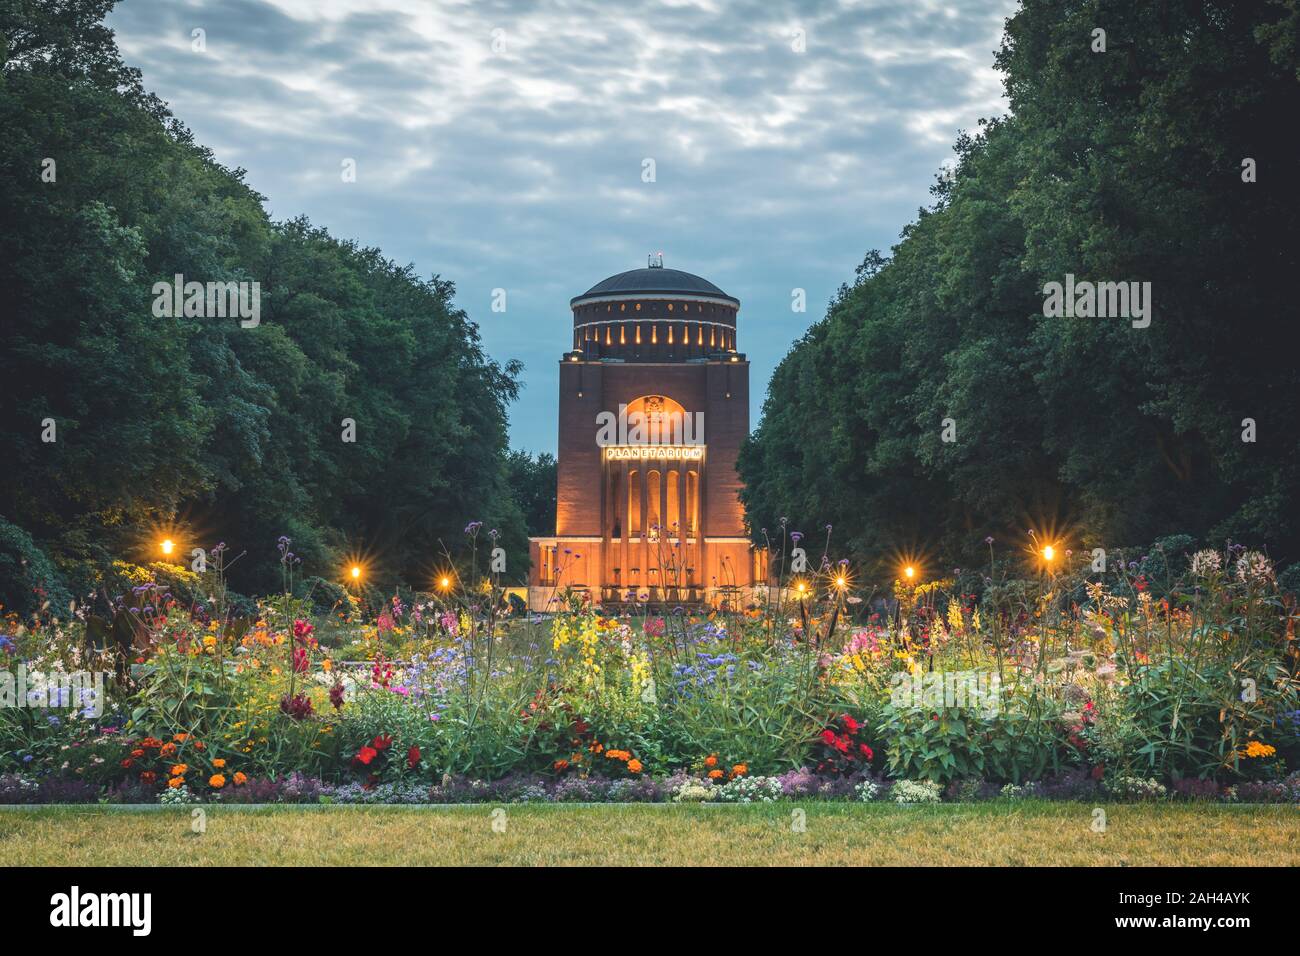 Alemania, Hamburgo, el Planetario de Hamburgo Stadtpark al atardecer Foto de stock